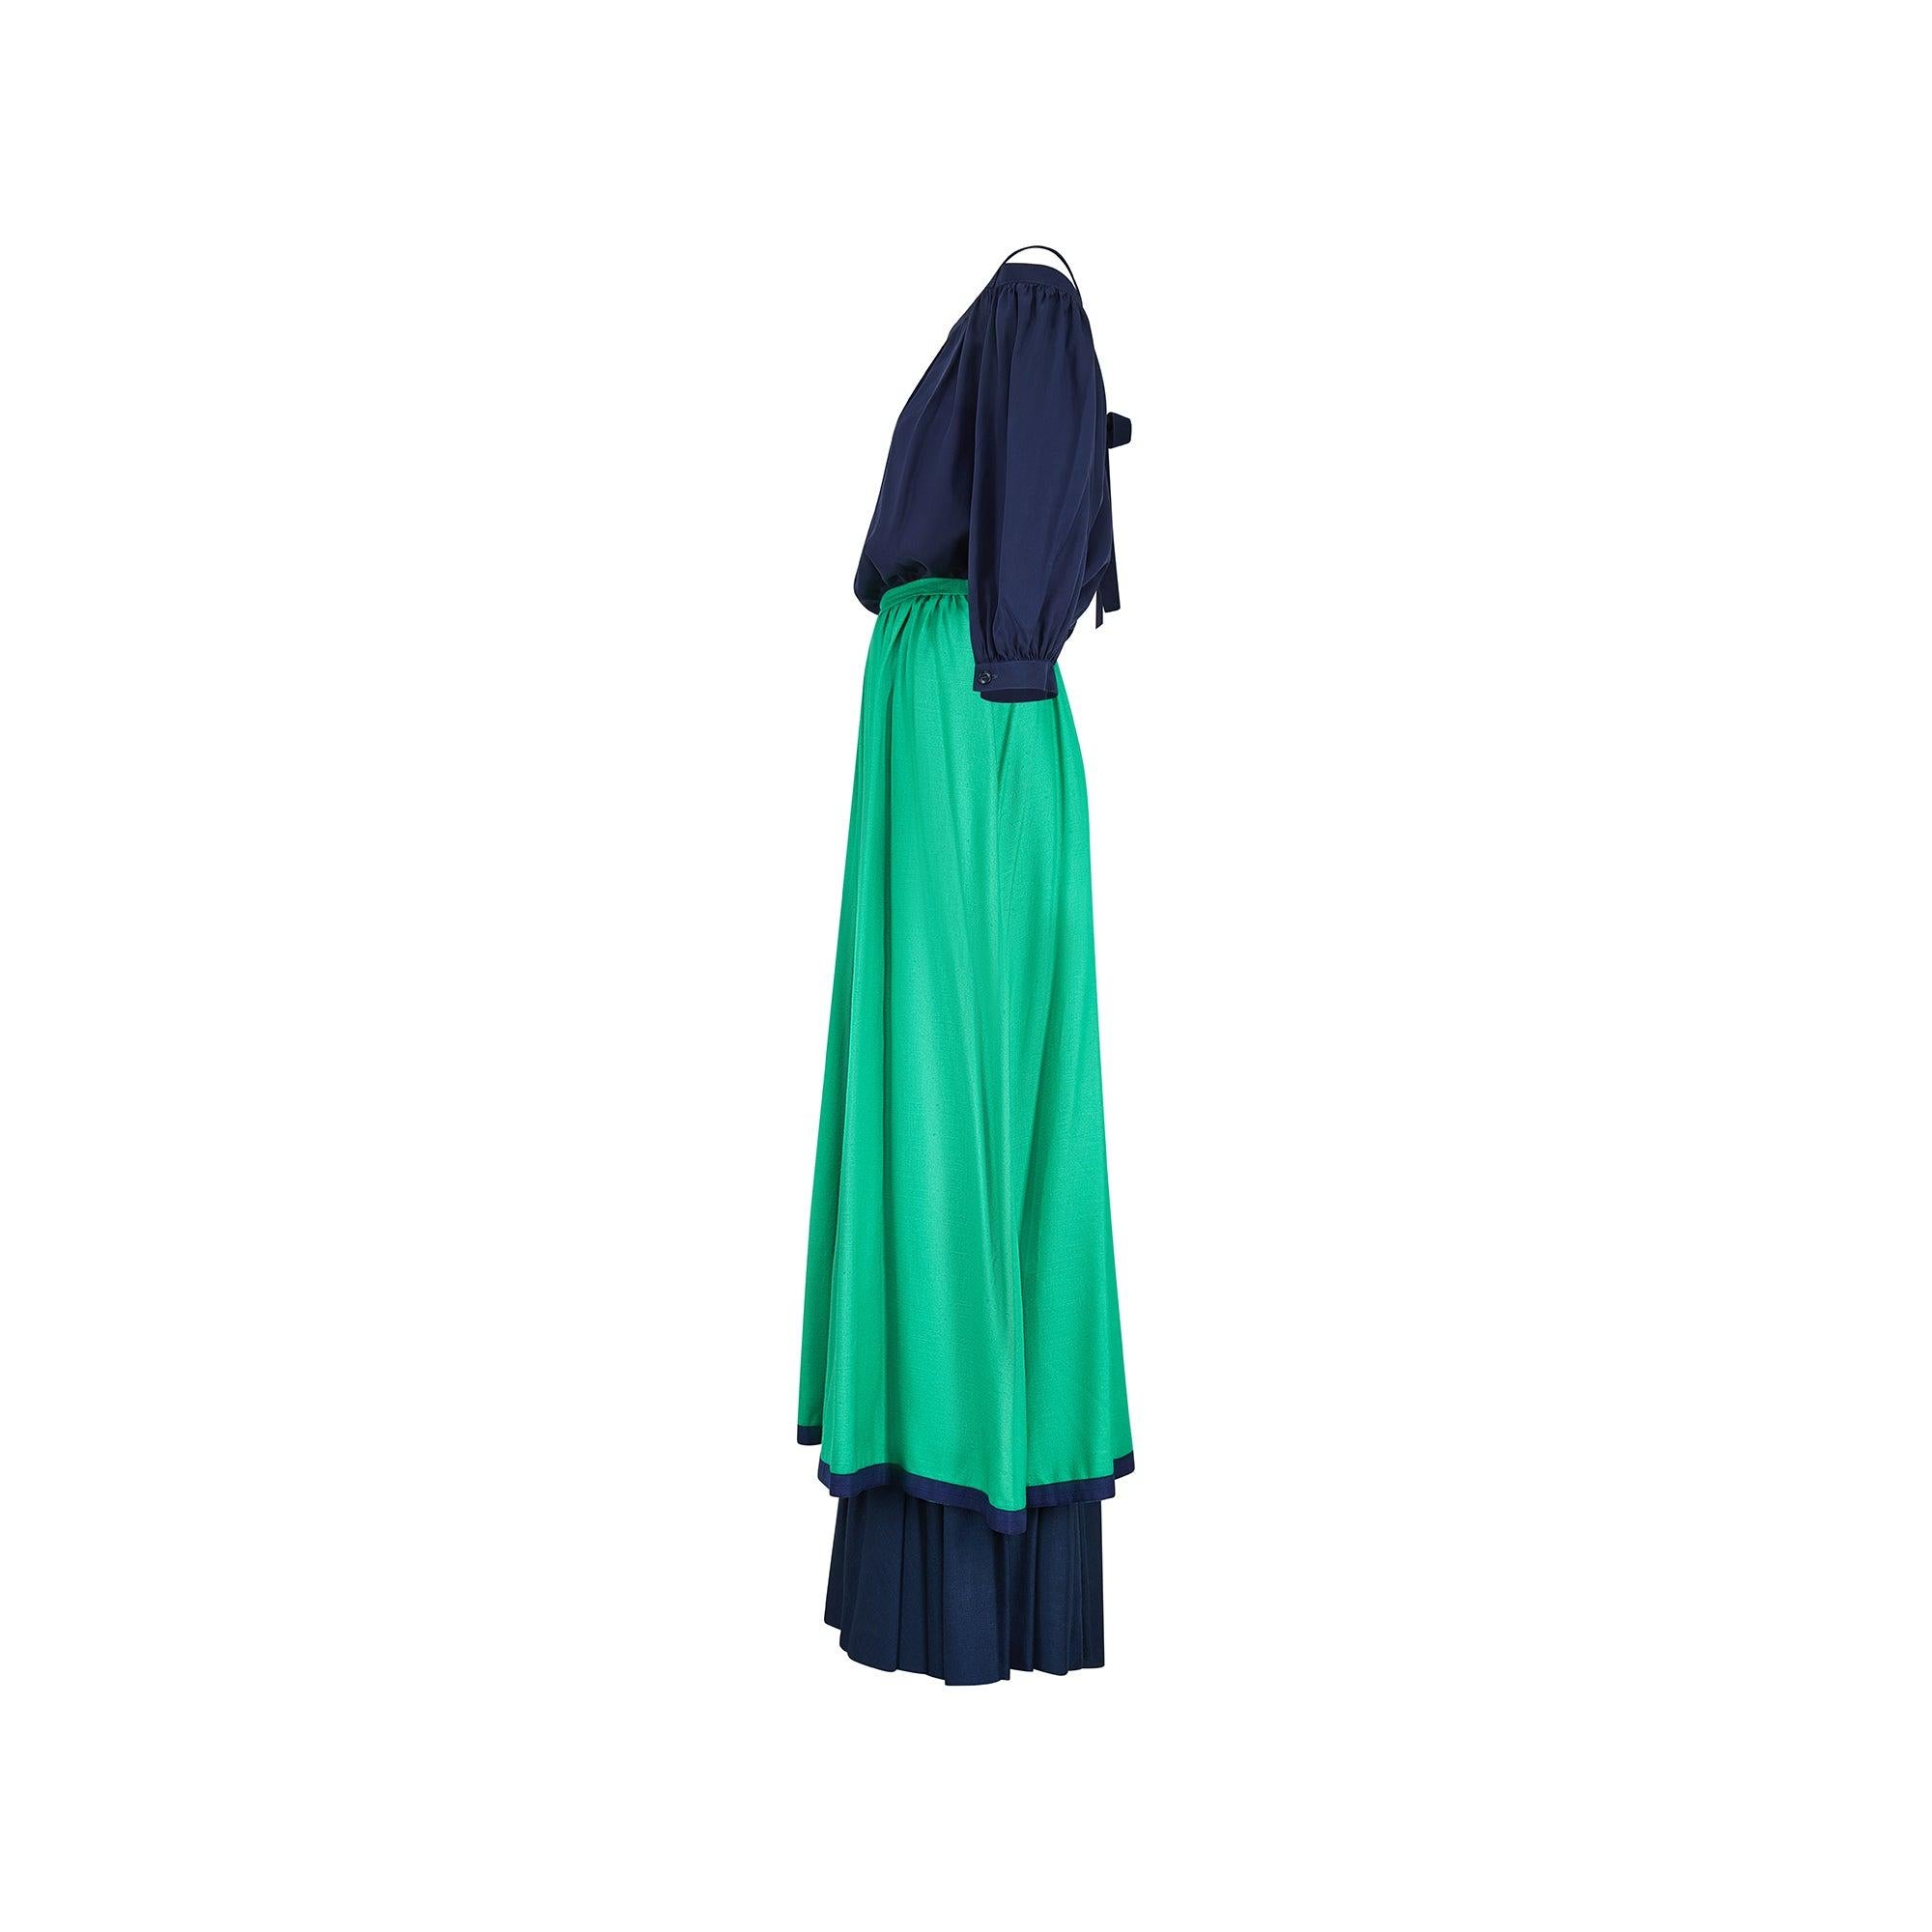 Le couturier français Hubert de Givenchy était encore à la tête de sa maison de couture éponyme lorsque cet ensemble complet a défilé pour la collection de prêt-à-porter printemps/été 1977. Ce deux-pièces se compose d'une chemise en soie bleu marine